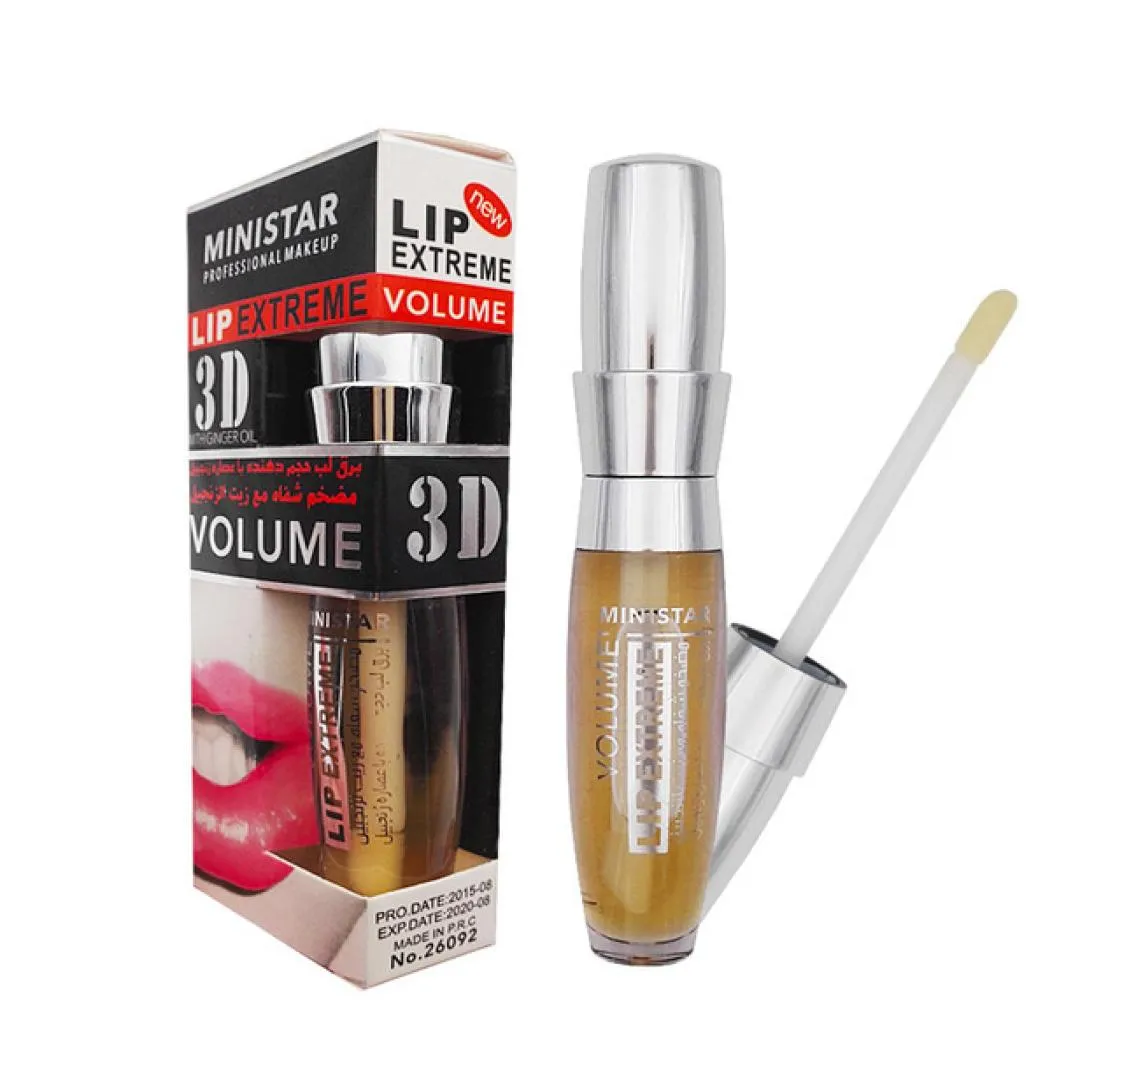 Ministar Lip Plump Enhancer Большой рот сексуальный блеск блестящий объем увлажняющий увлажняющий питательный макияж -макияж эластичность масло 5180296